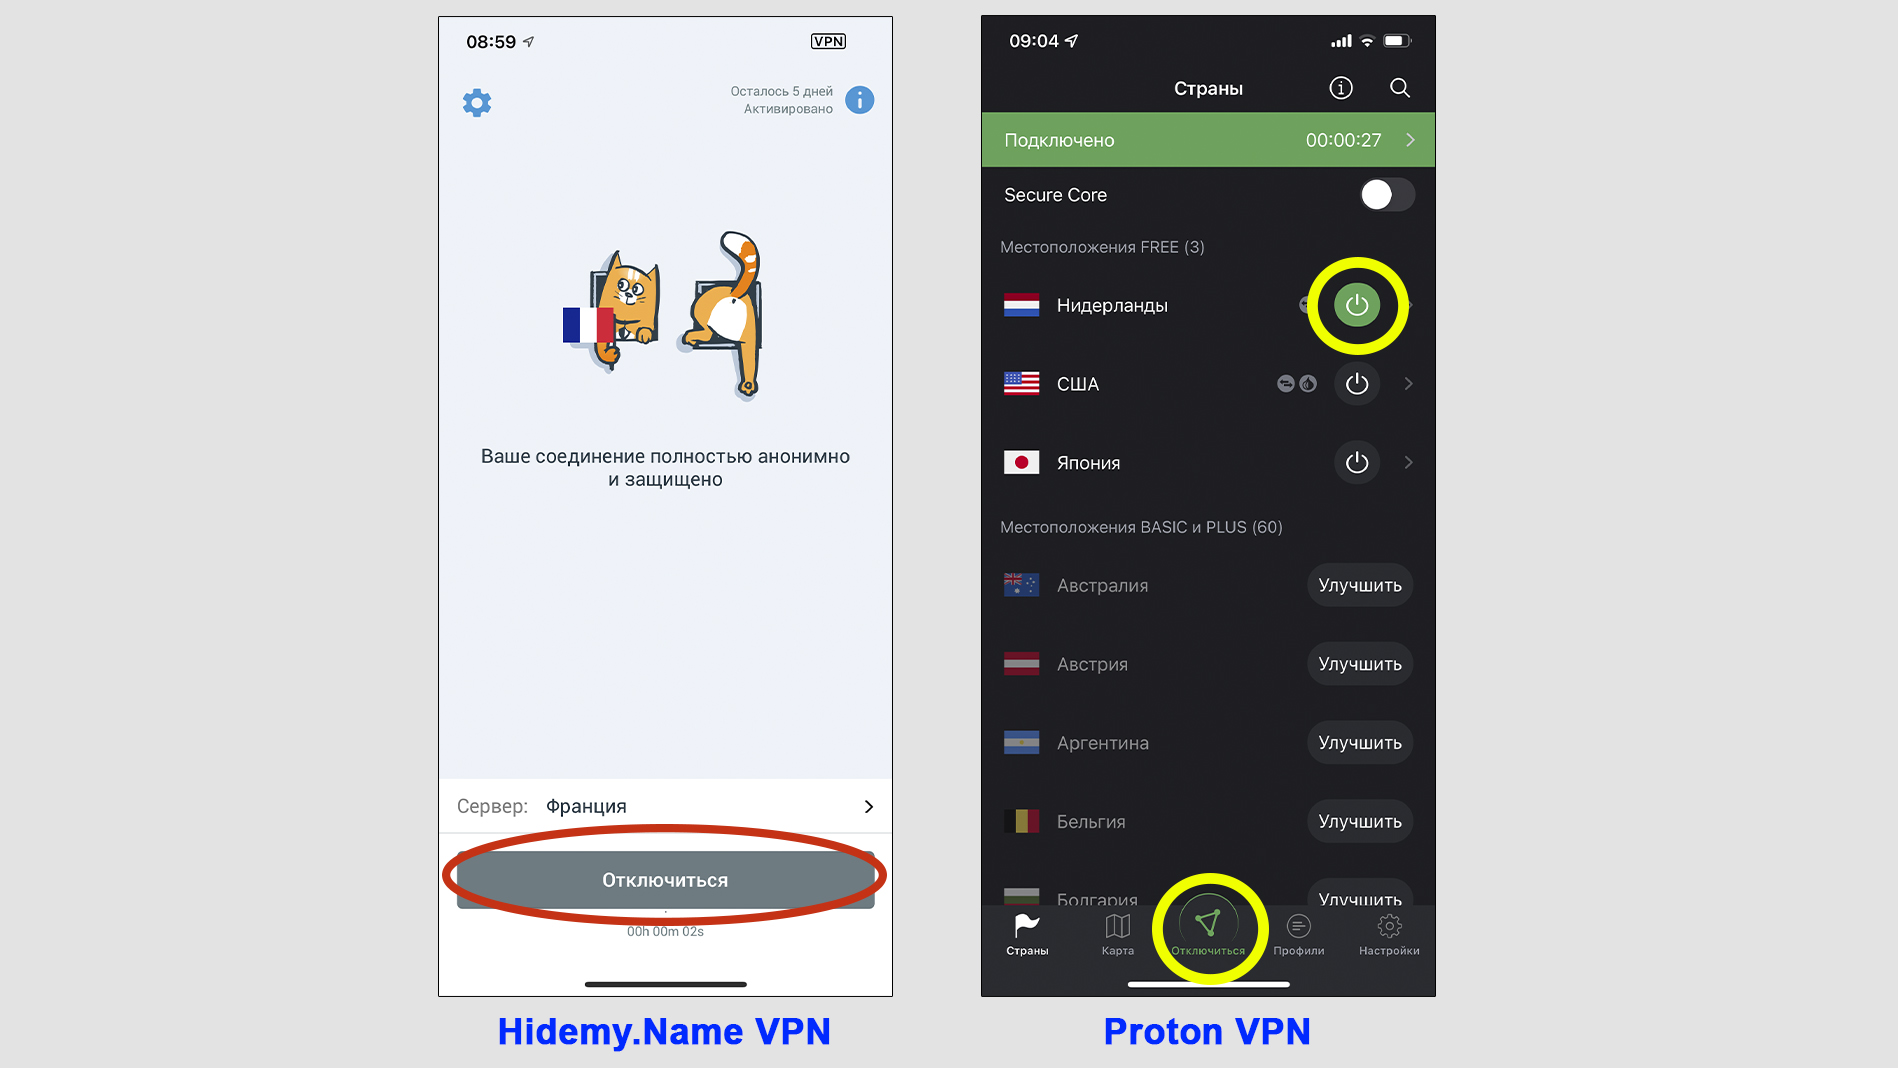 Окна приложений VPN-сервисов Hidemy.Name и Proton. Отмечены кнопки отключения.